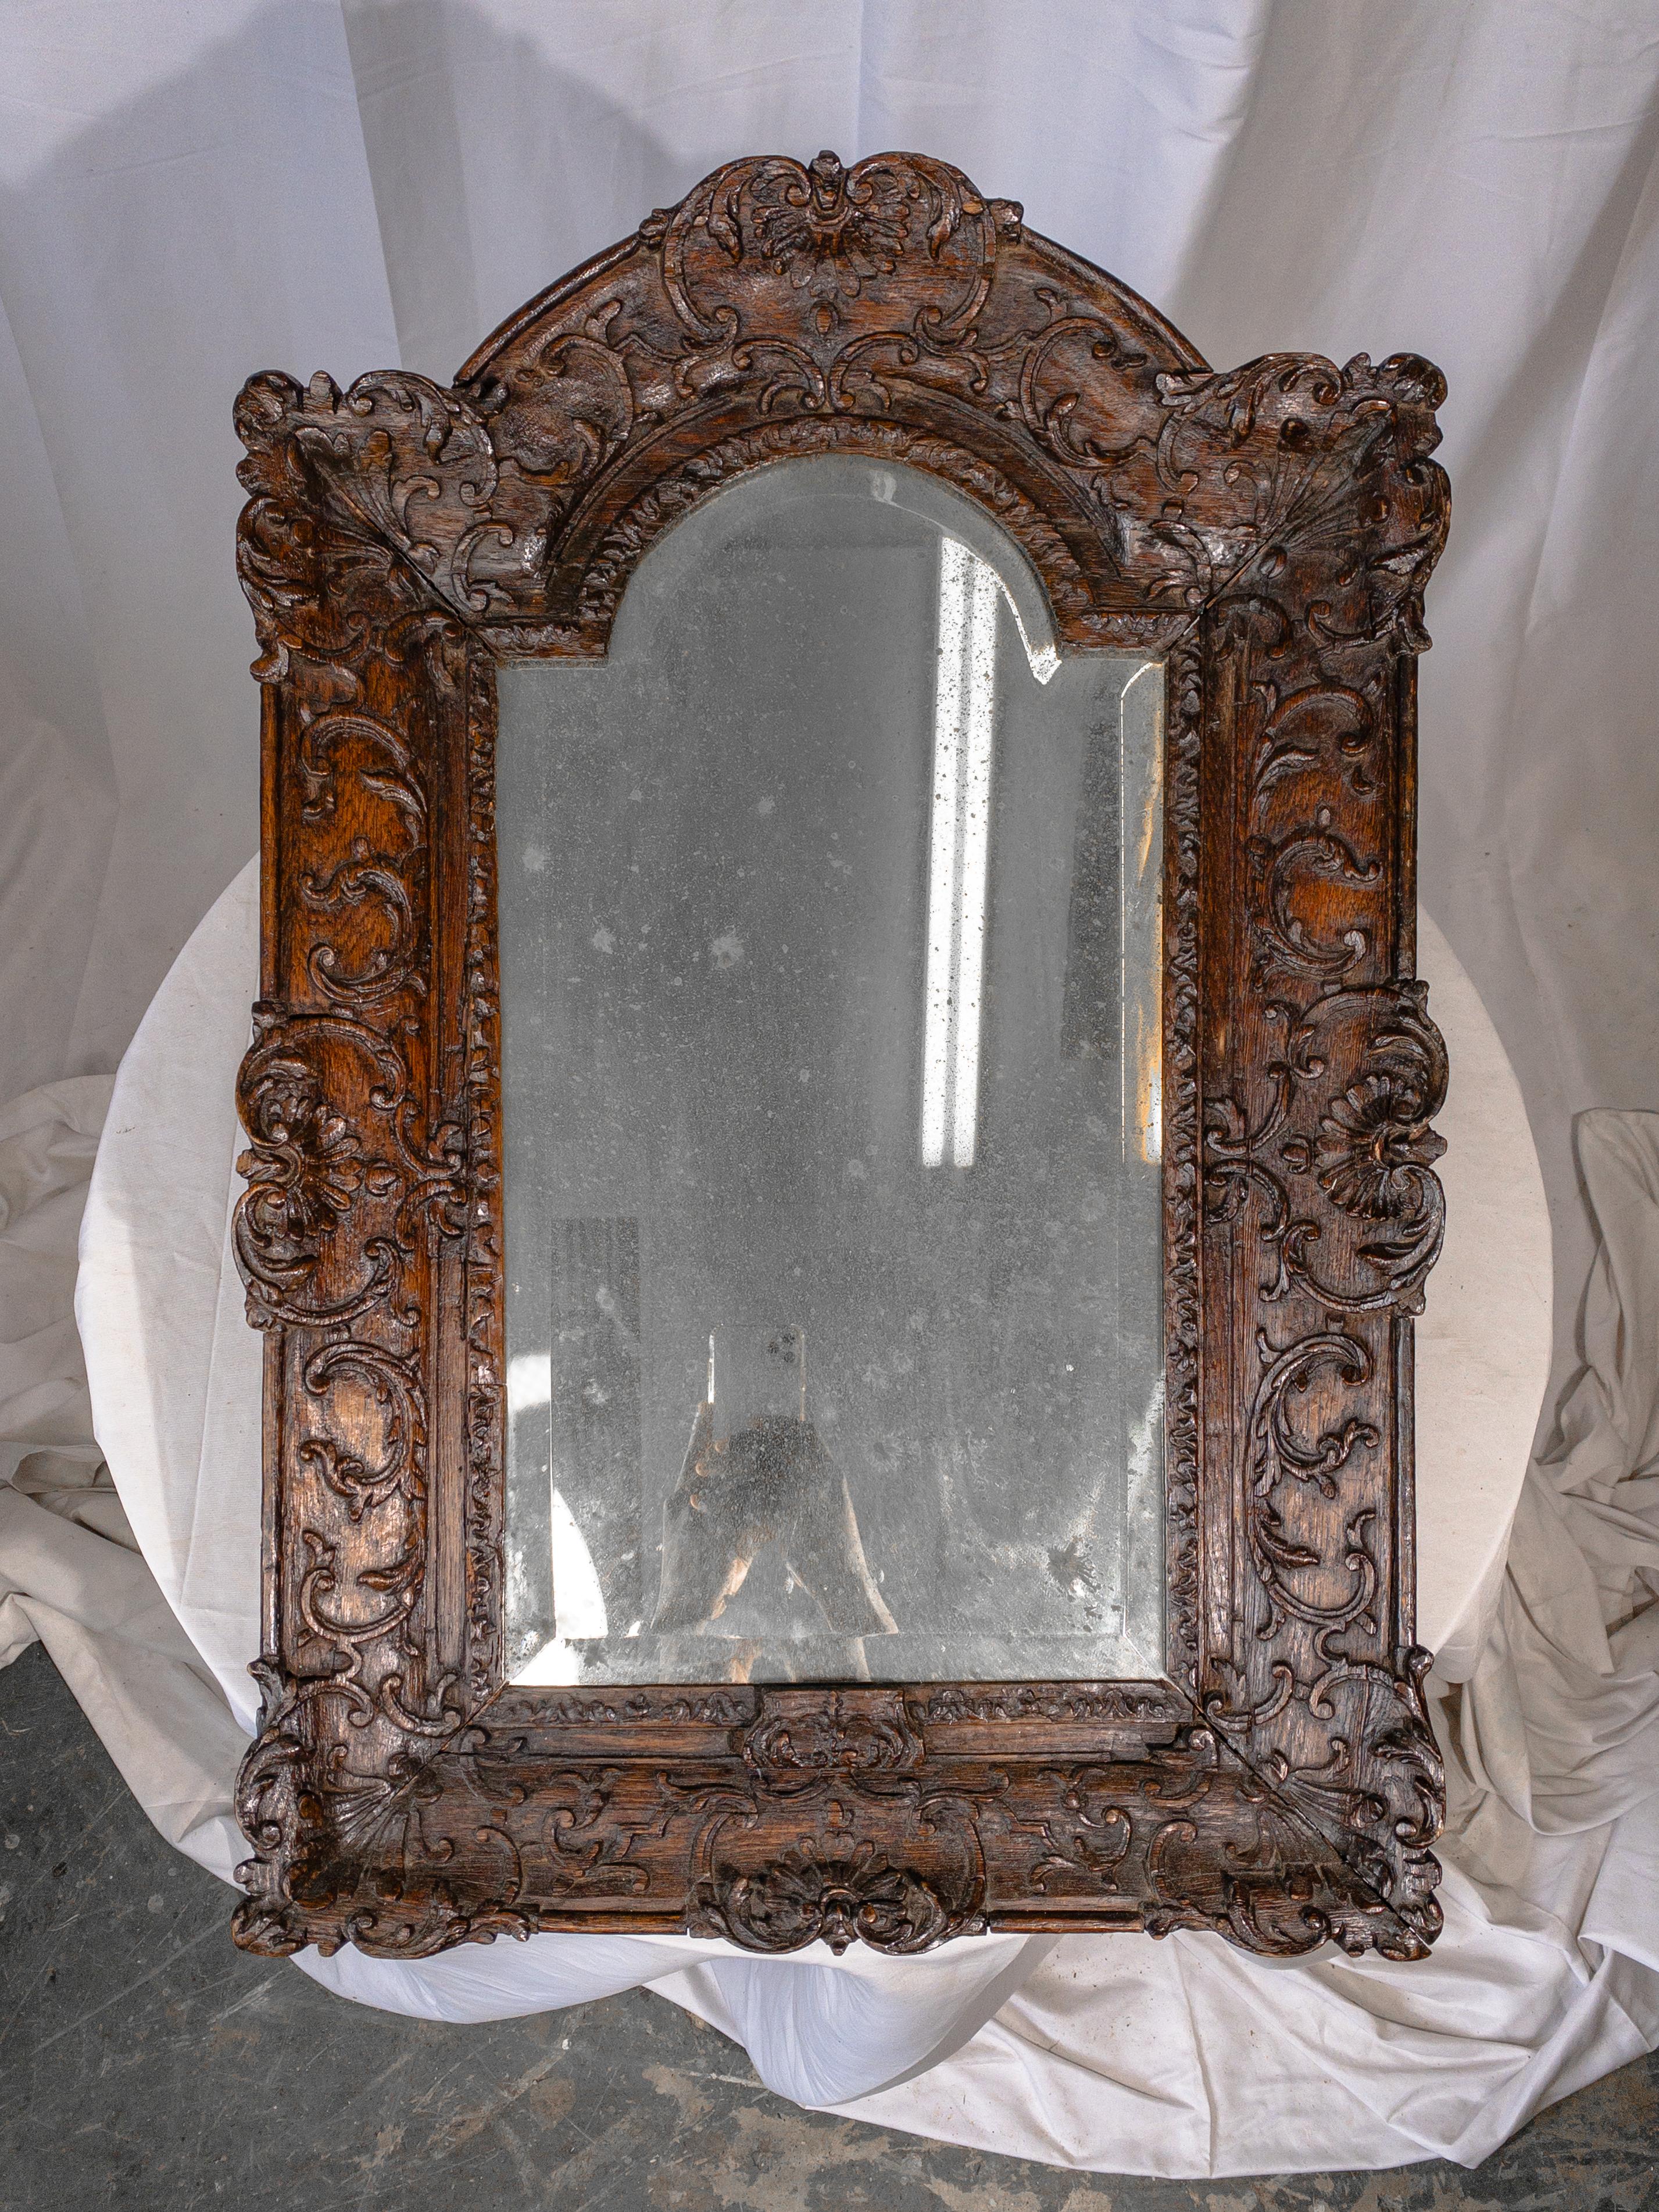 Dieser Fuchsspiegel aus dem 18. Jahrhundert, eingebettet in einen sorgfältig von Hand geschnitzten Holzrahmen, verkörpert die Eleganz und Handwerkskunst der späten Renaissancezeit. Der Rahmen selbst ist ein Zeugnis handwerklichen Könnens, mit